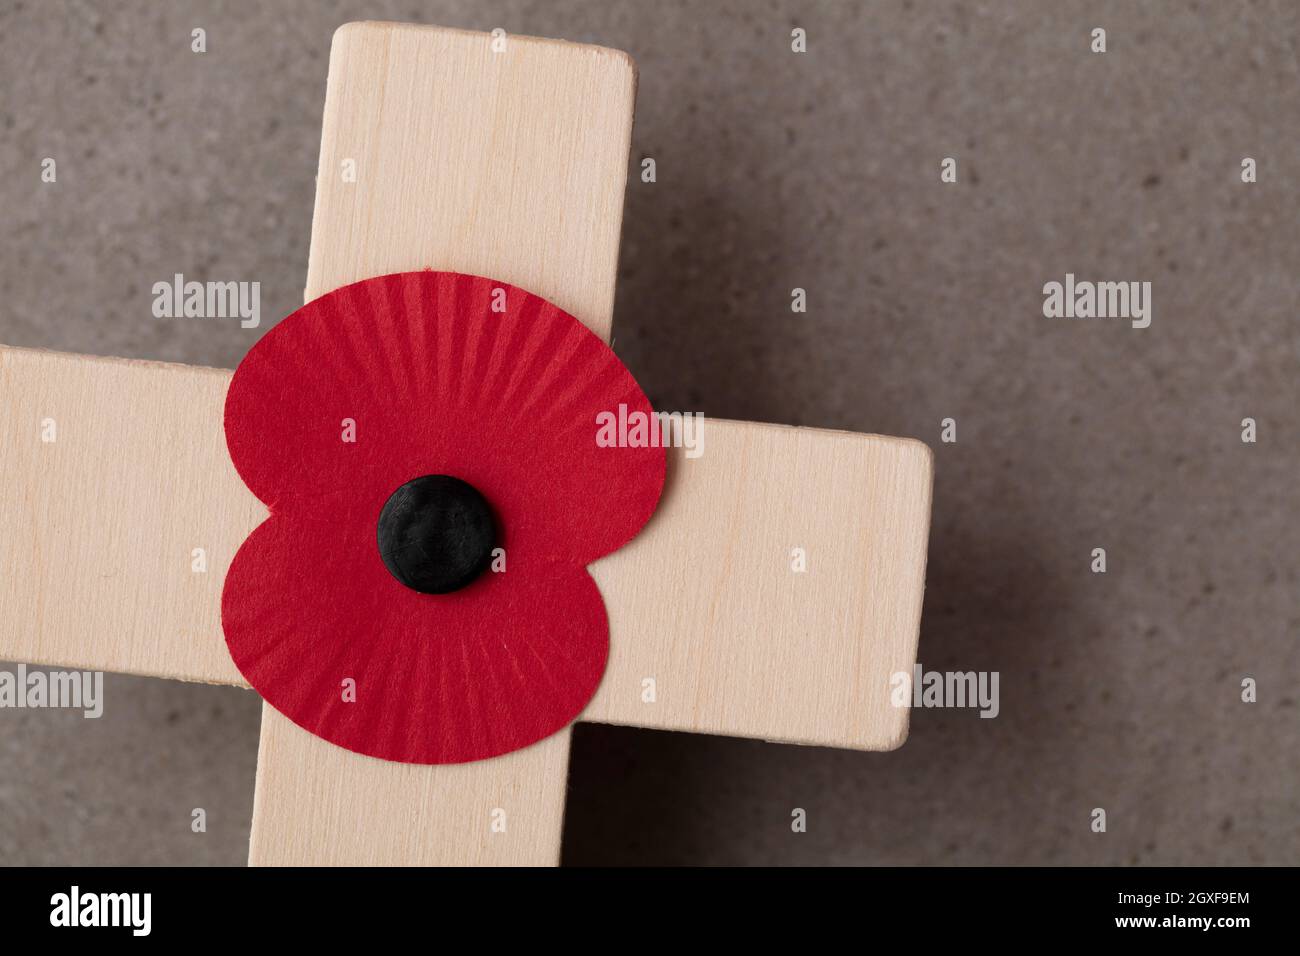 Un coquelicot rouge souvenir sur une croix en bois. Concept militaire de jour du souvenir Banque D'Images